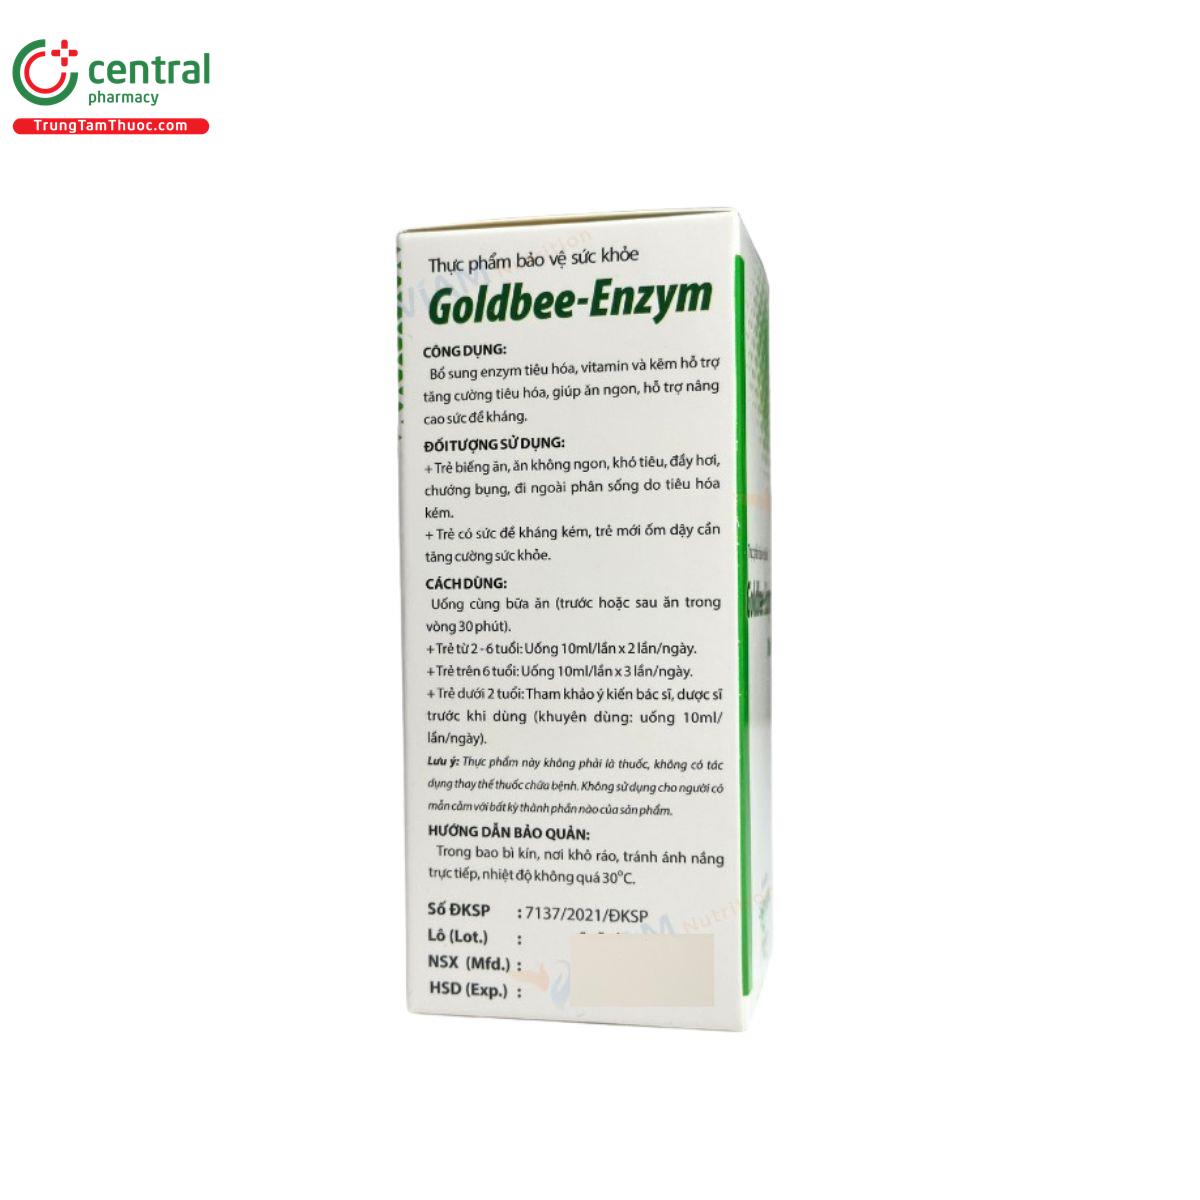 goldbee enzym 6 A0837